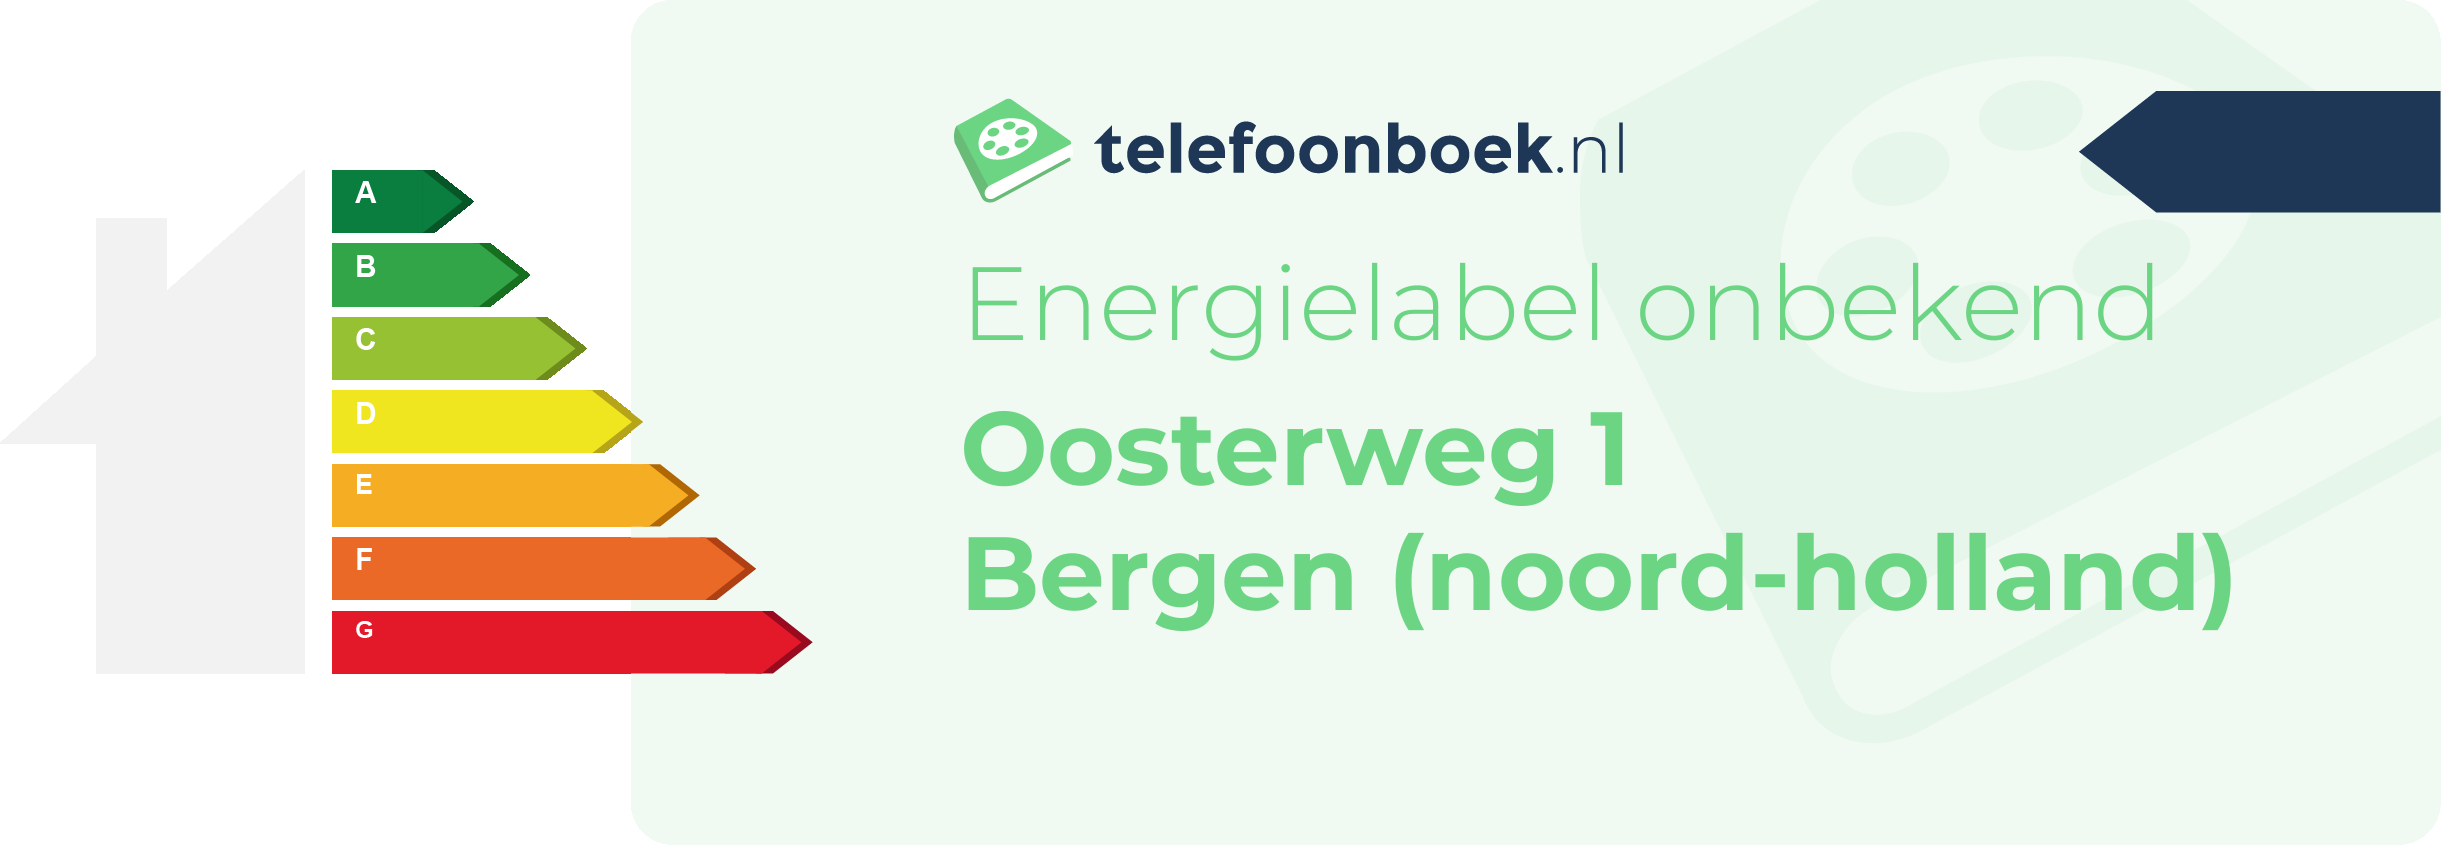 Energielabel Oosterweg 1 Bergen (Noord-Holland)